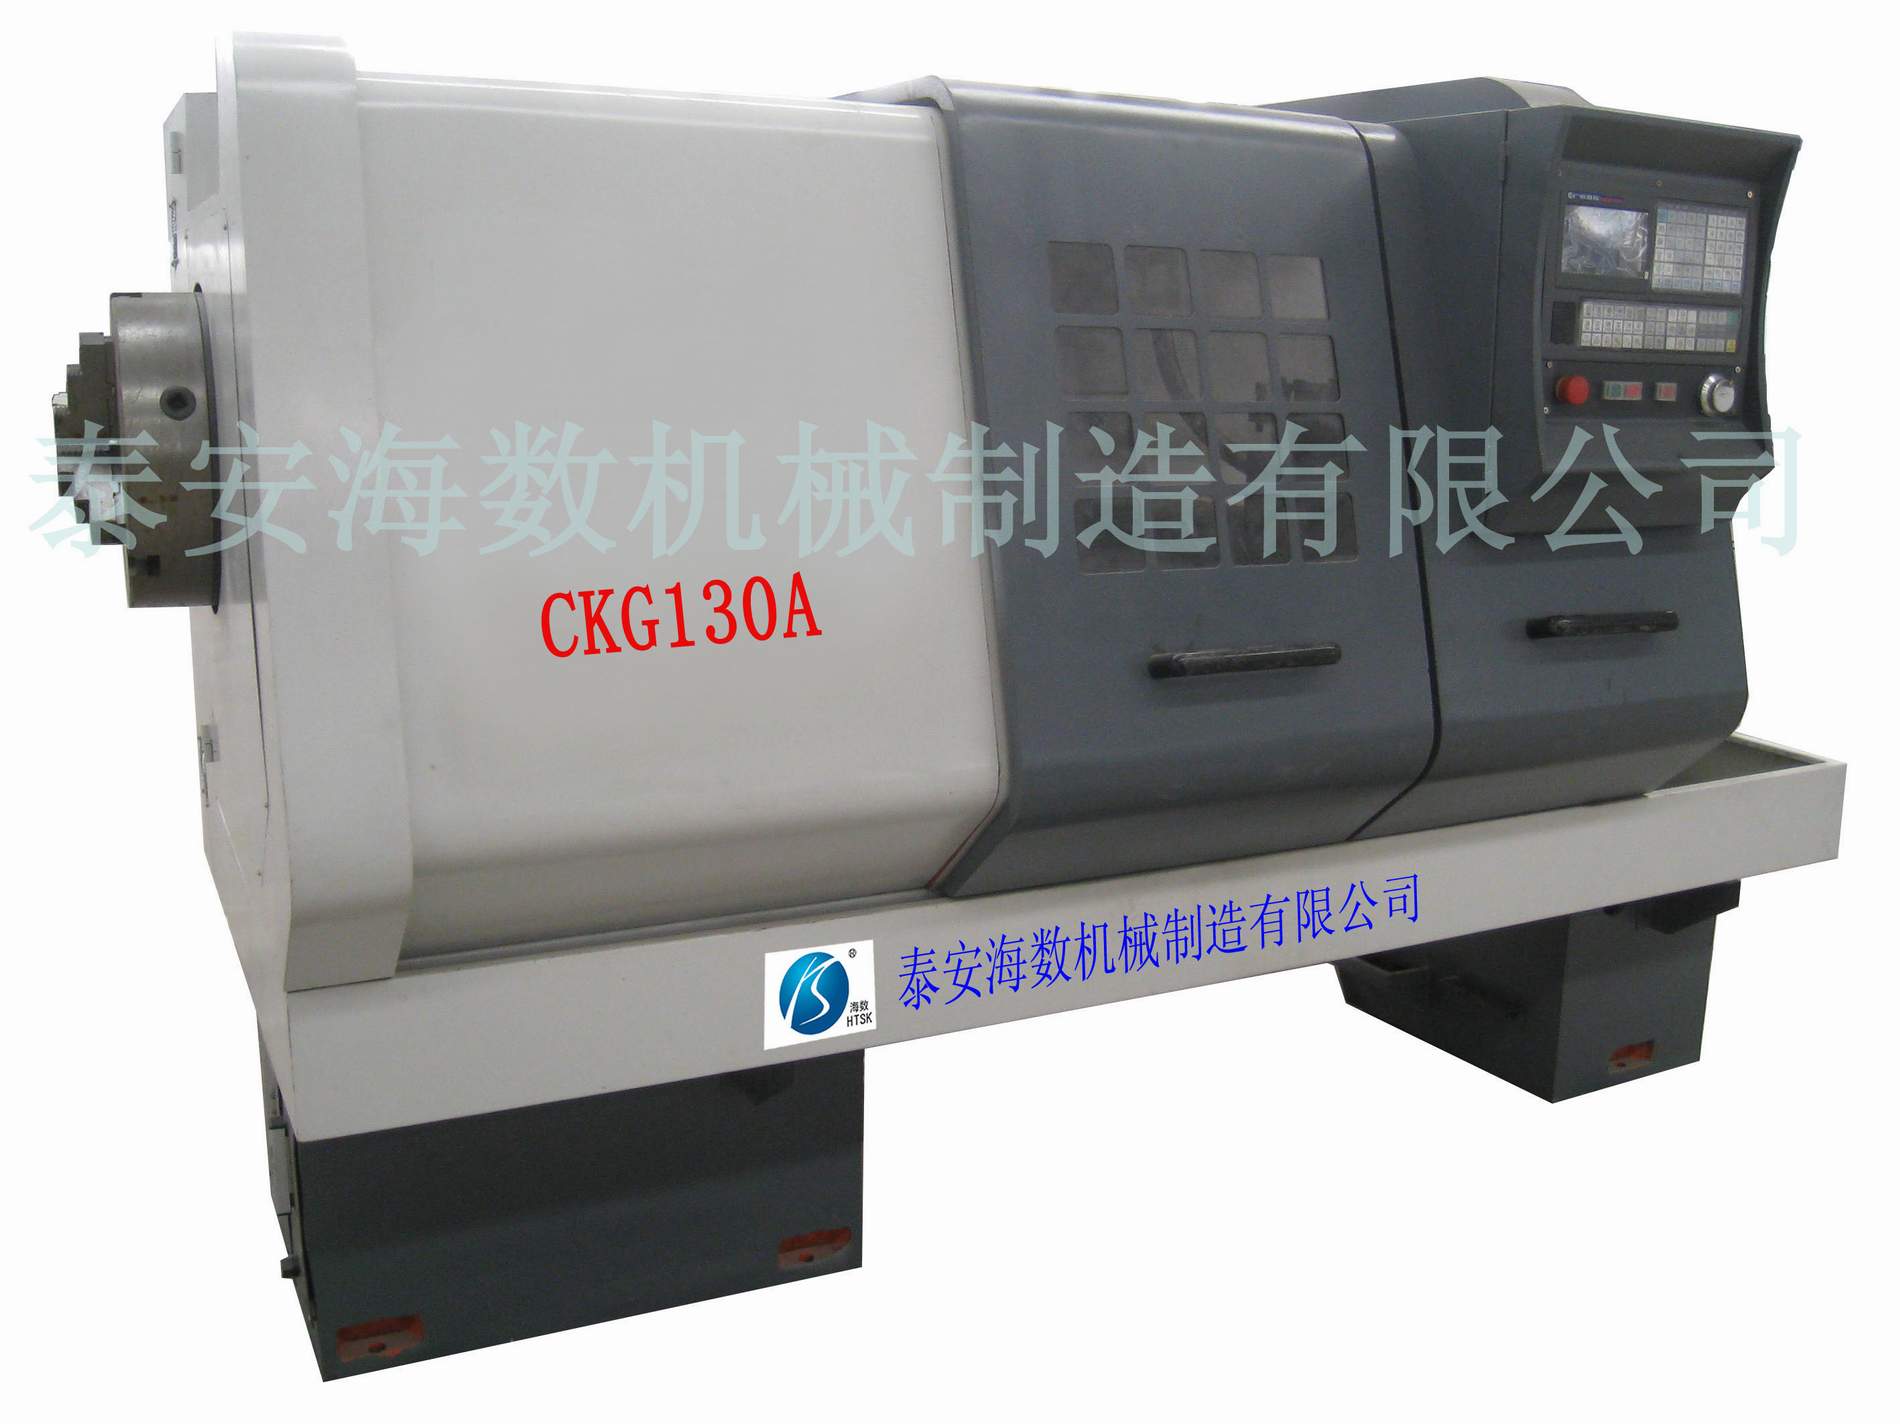 CKG130A/CKG160A CNC pipe thread lathe